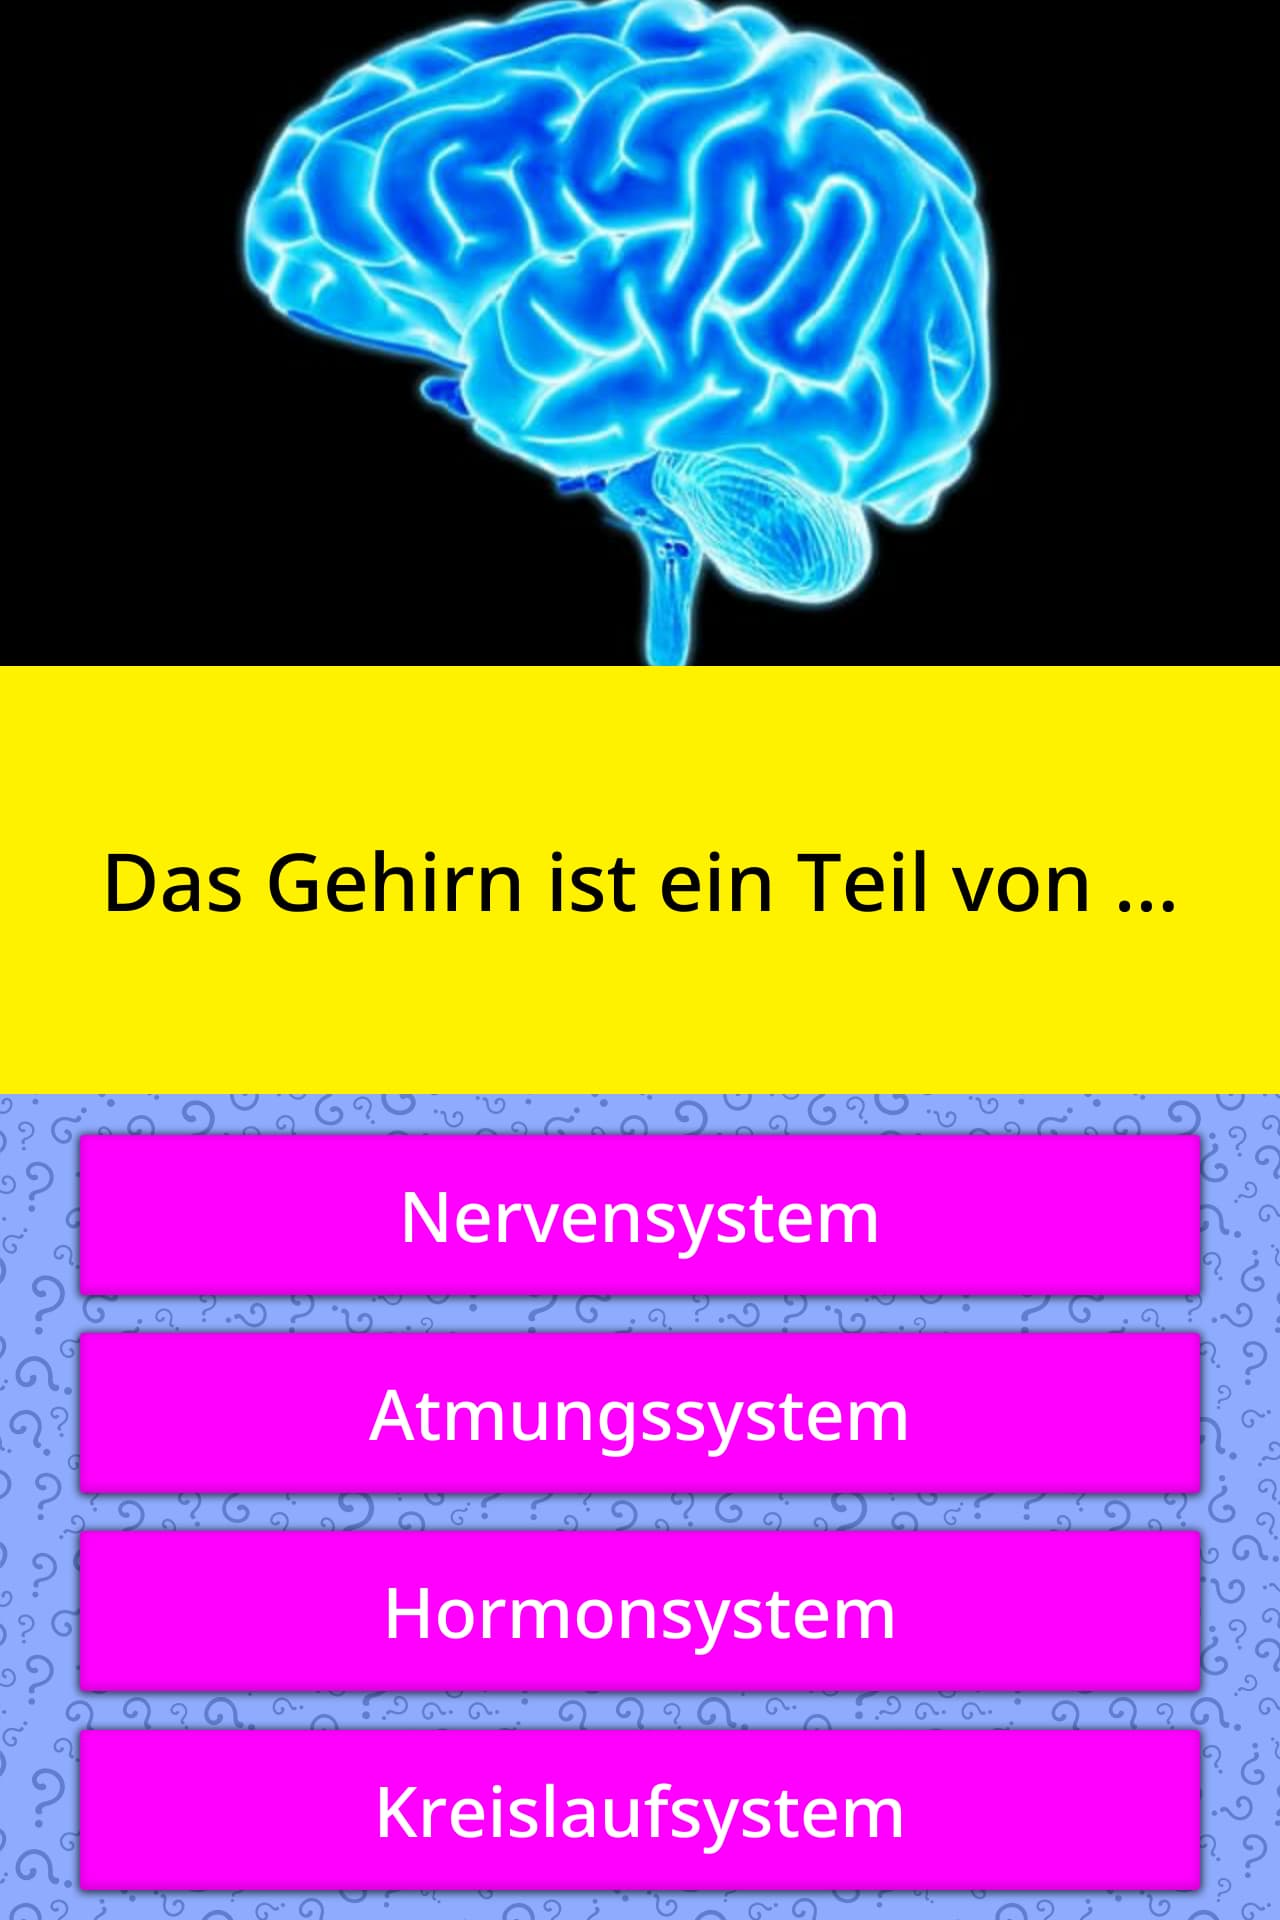 Gehirn Quiz